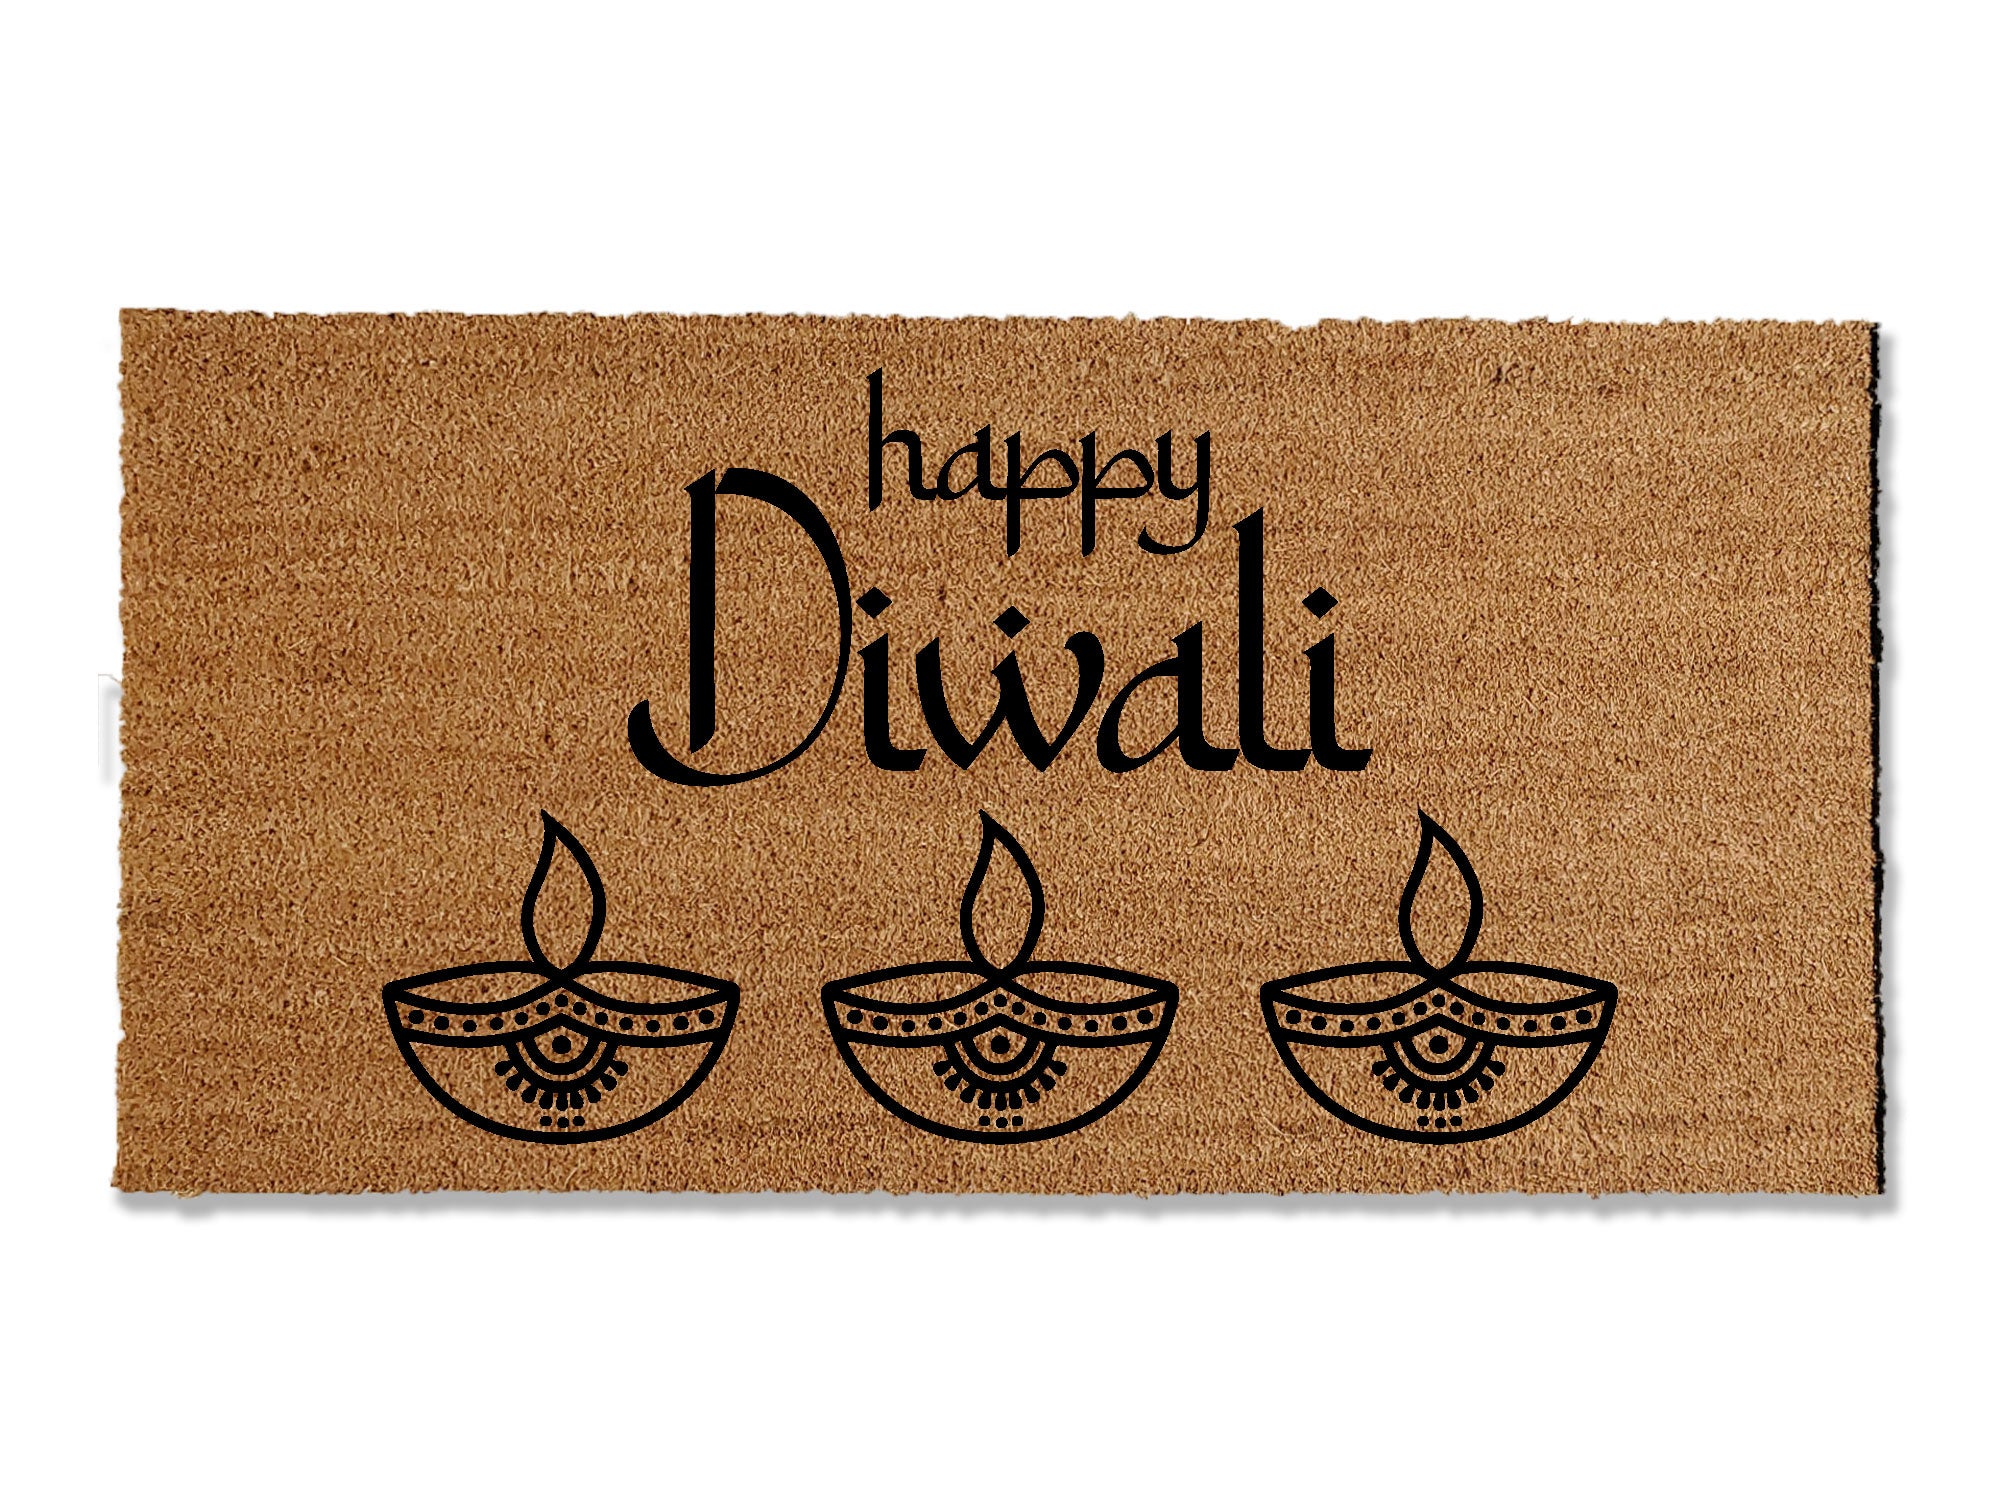 Happy Diwali Doormat